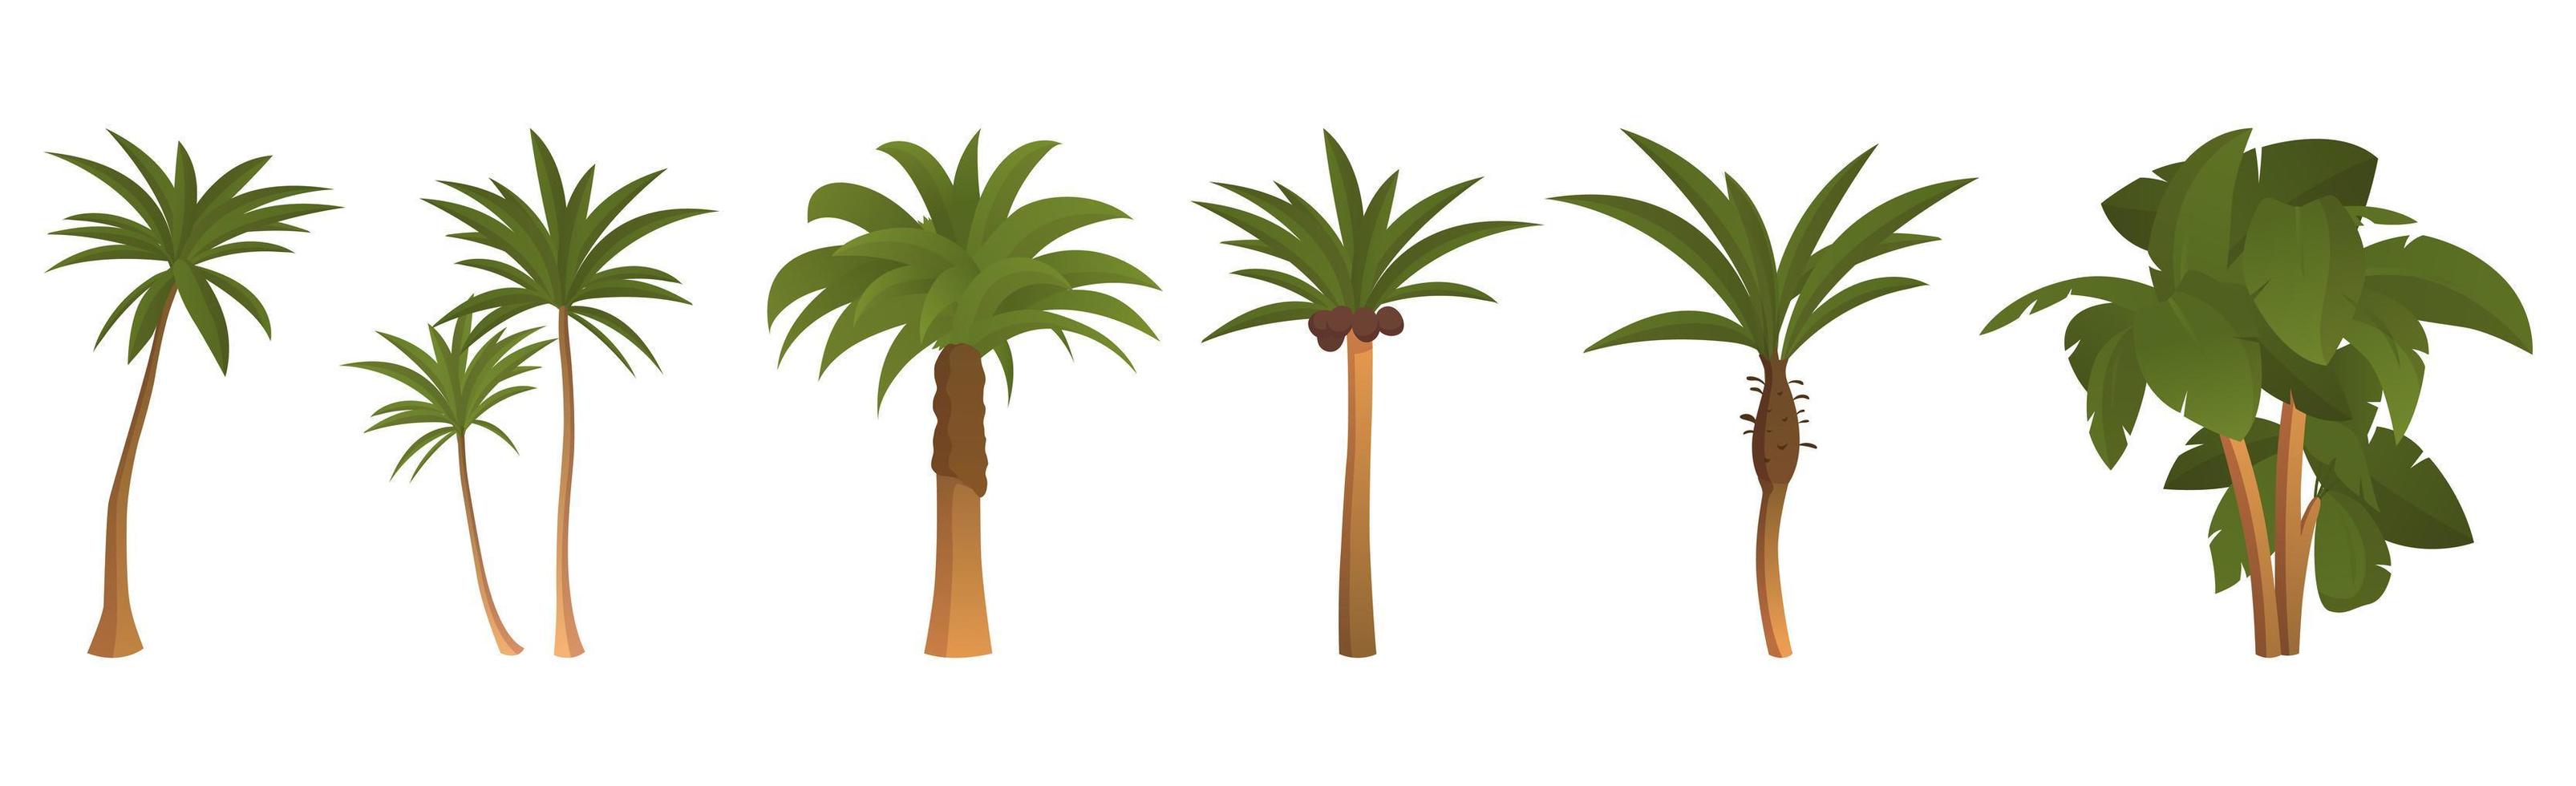 set van 6 stuks palmbomen op een witte achtergrond - vector